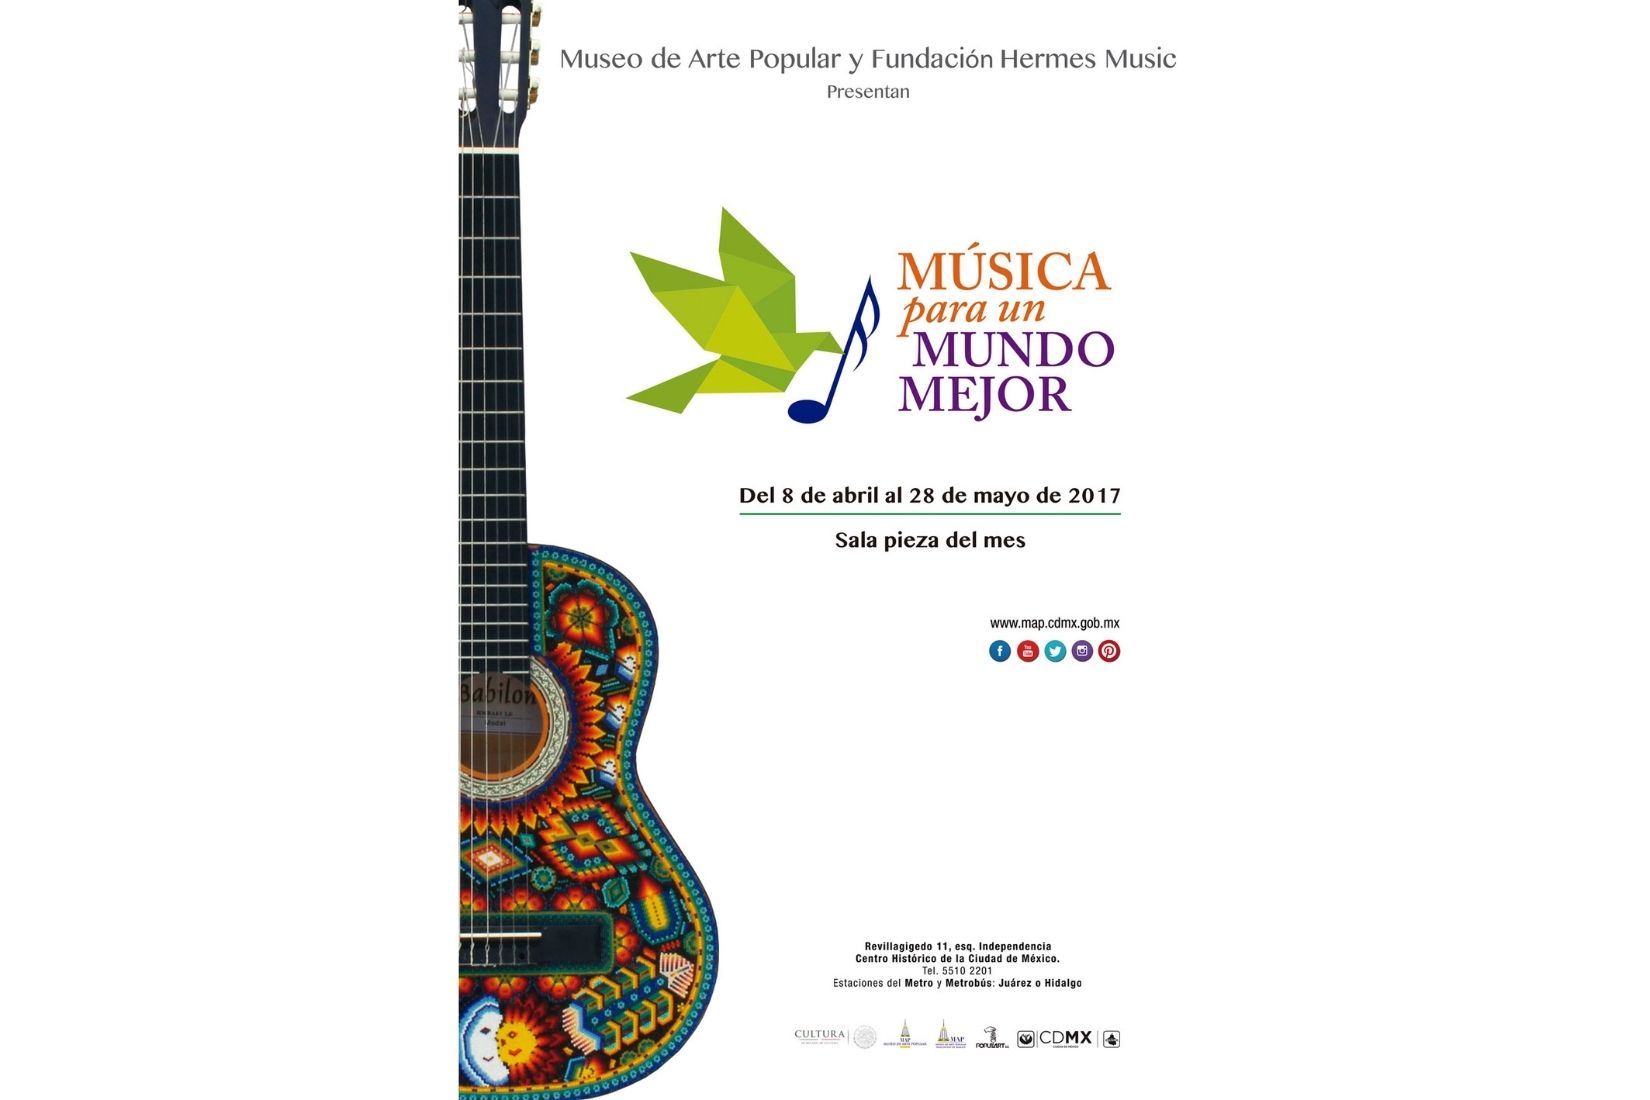 Portada de libro Música para un Mundo Mejor. Museo de Arte Popular y Fundación Hermés Music. (Foto: José Rodríguez Magos y David Chacón).